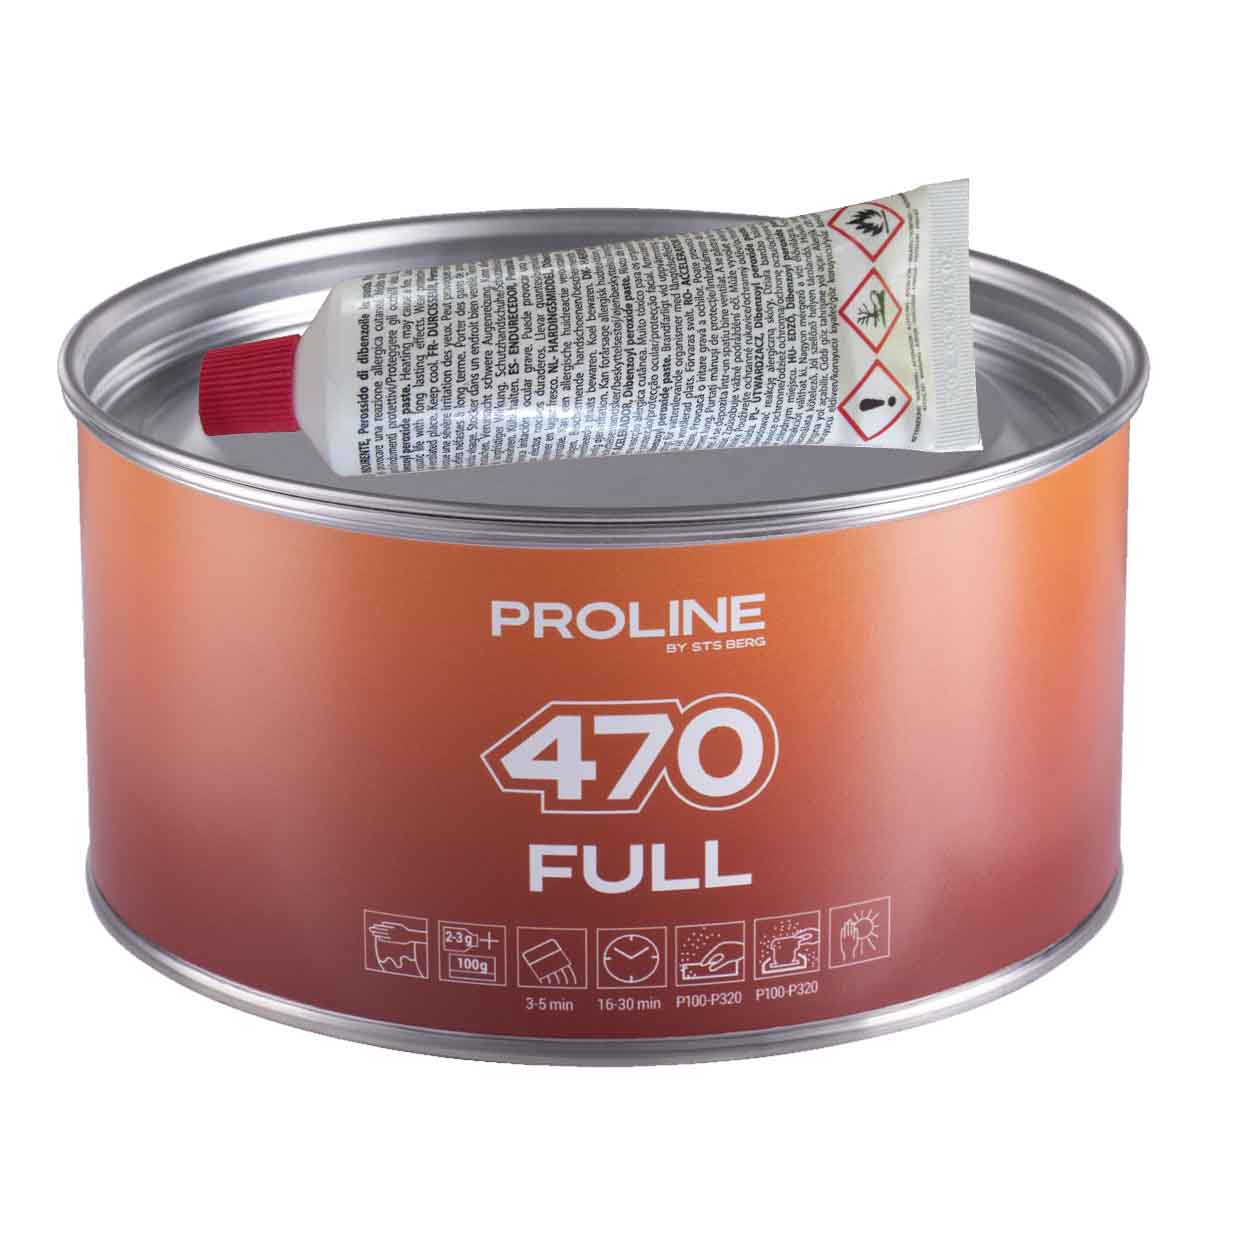 PROLINE 470 FULL univerzális finom tömítőanyag, súly: 1800 g